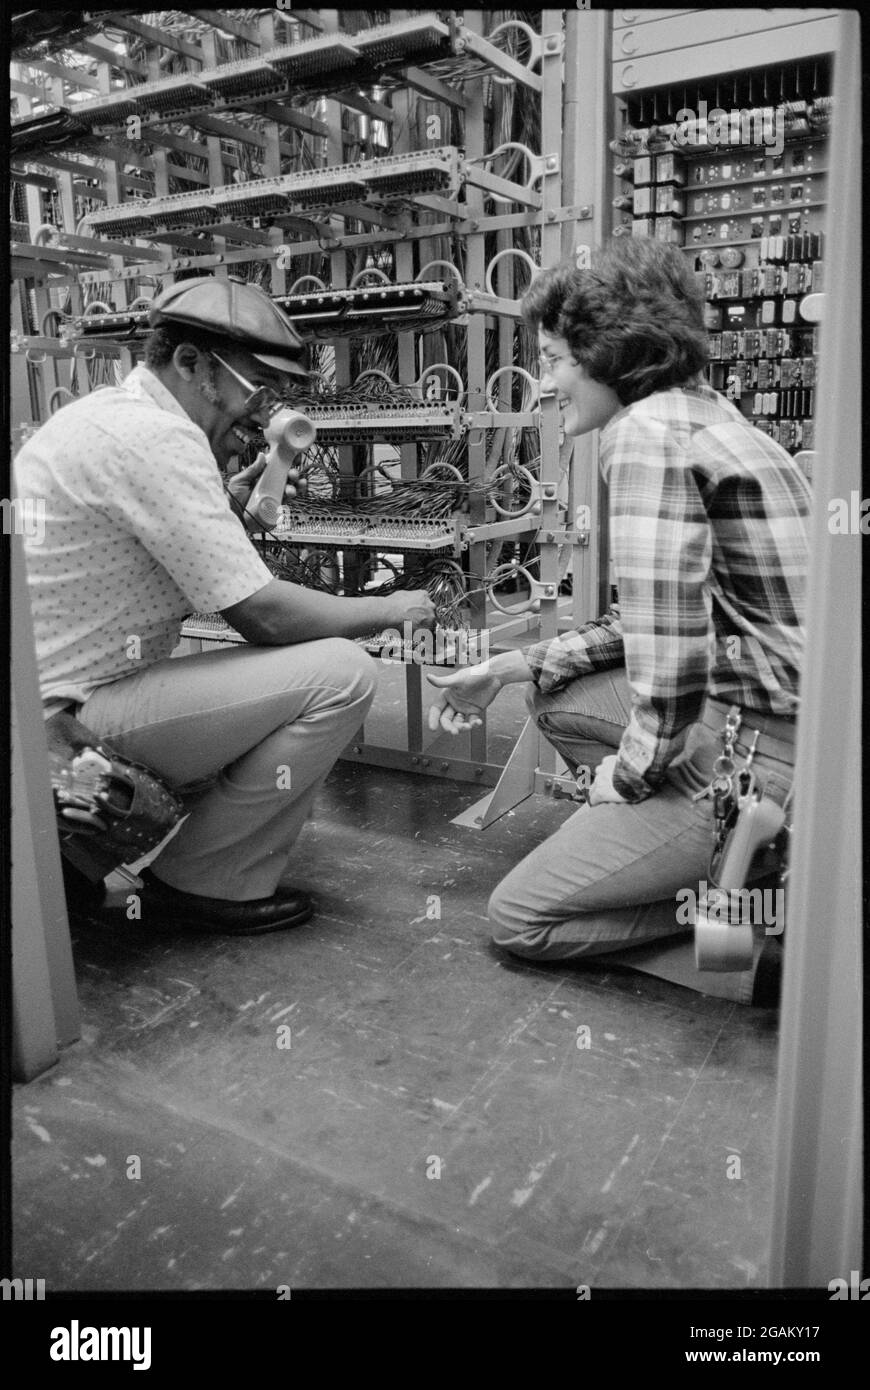 Foto von zwei Minderheitsarbeitern der Telefongesellschaft - einem afroamerikanischen Mann und einer Frau -, die in Innenräumen an Telefongeräten arbeiten, ohne Standort, 3/6/1979. (Foto von Thomas J O'Halloran/US News & World Report Collection/RBM Vintage Images) Stockfoto